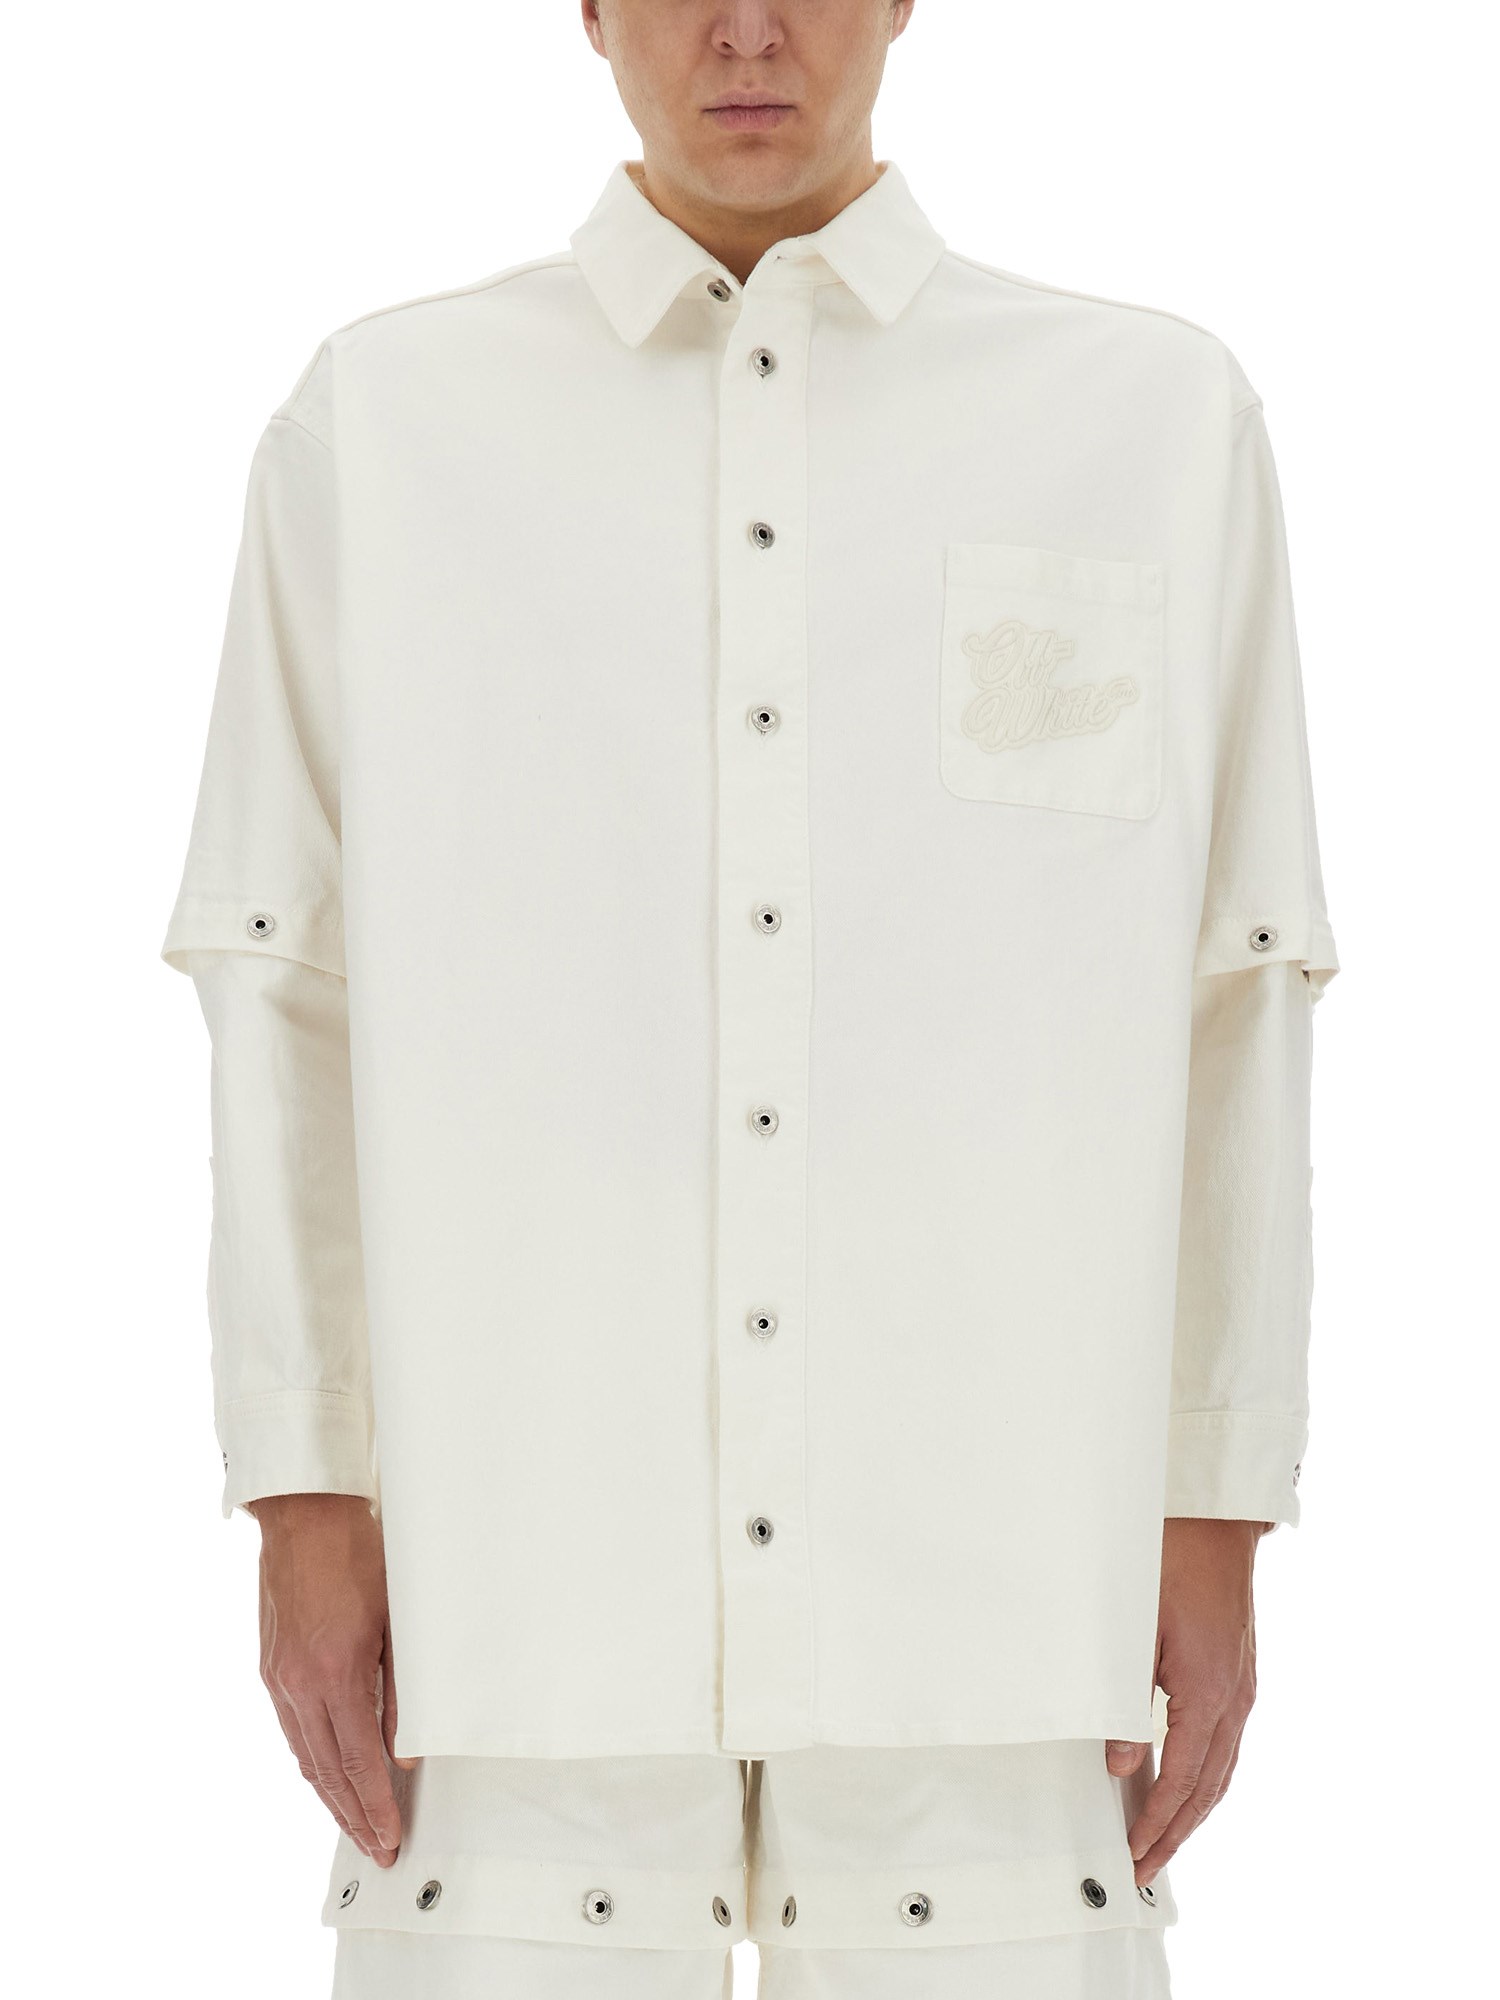 off-white 90's jacket-shirt